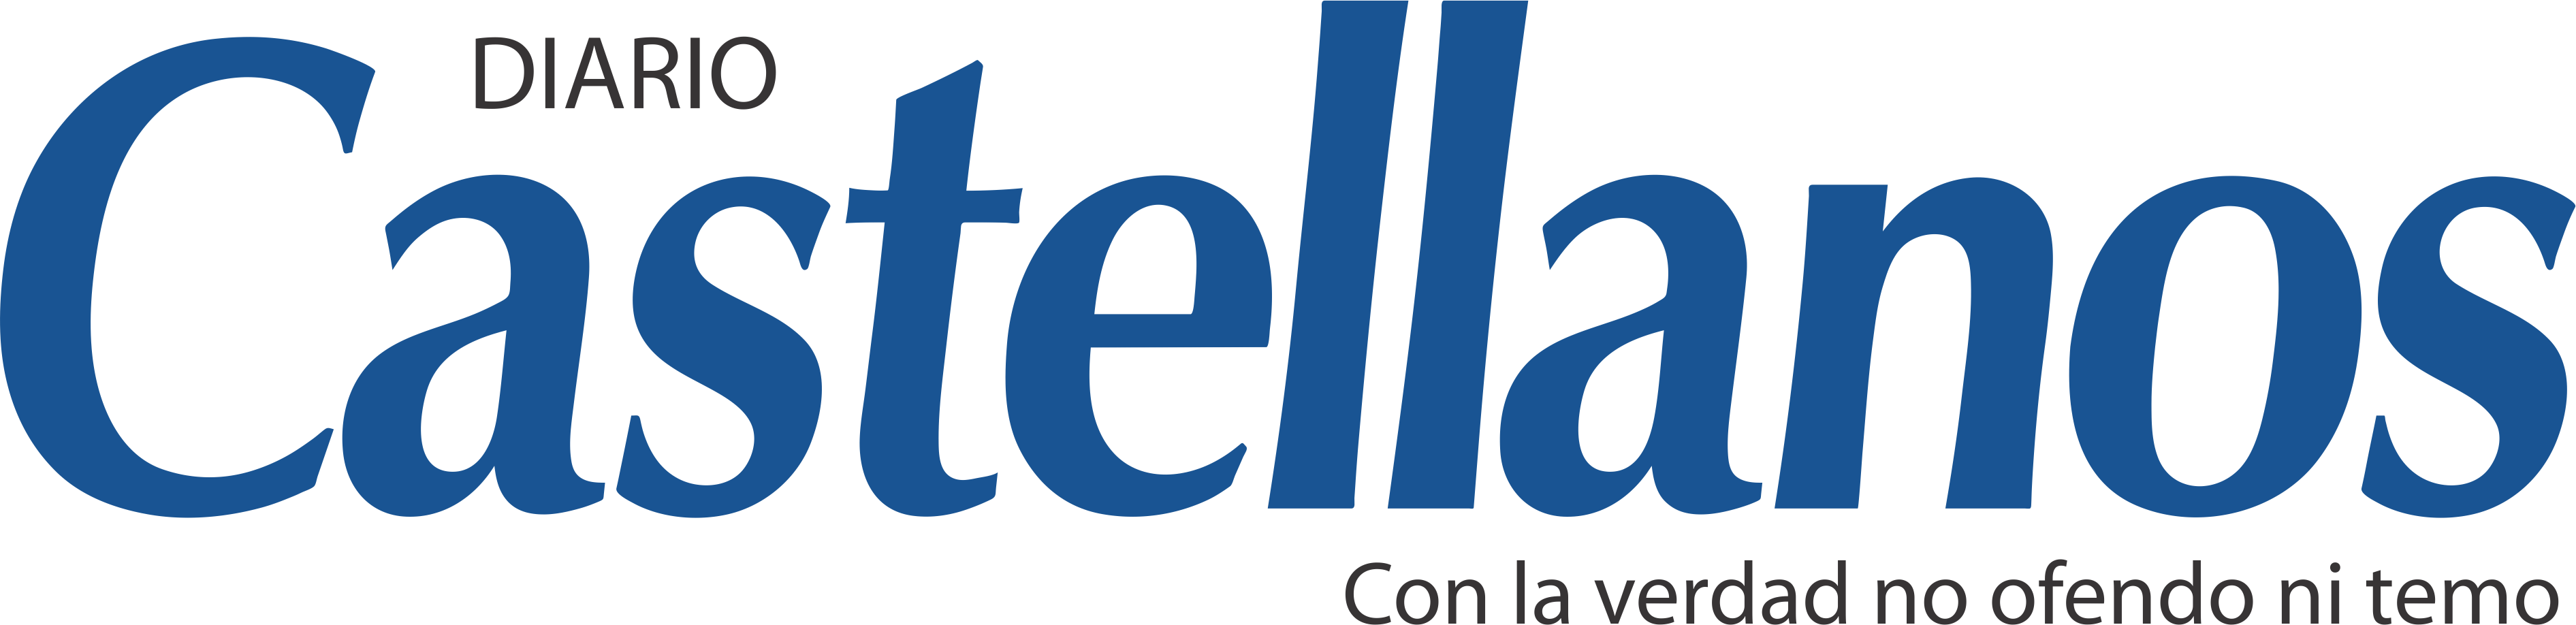 Logo del sitio Diario Castellanos